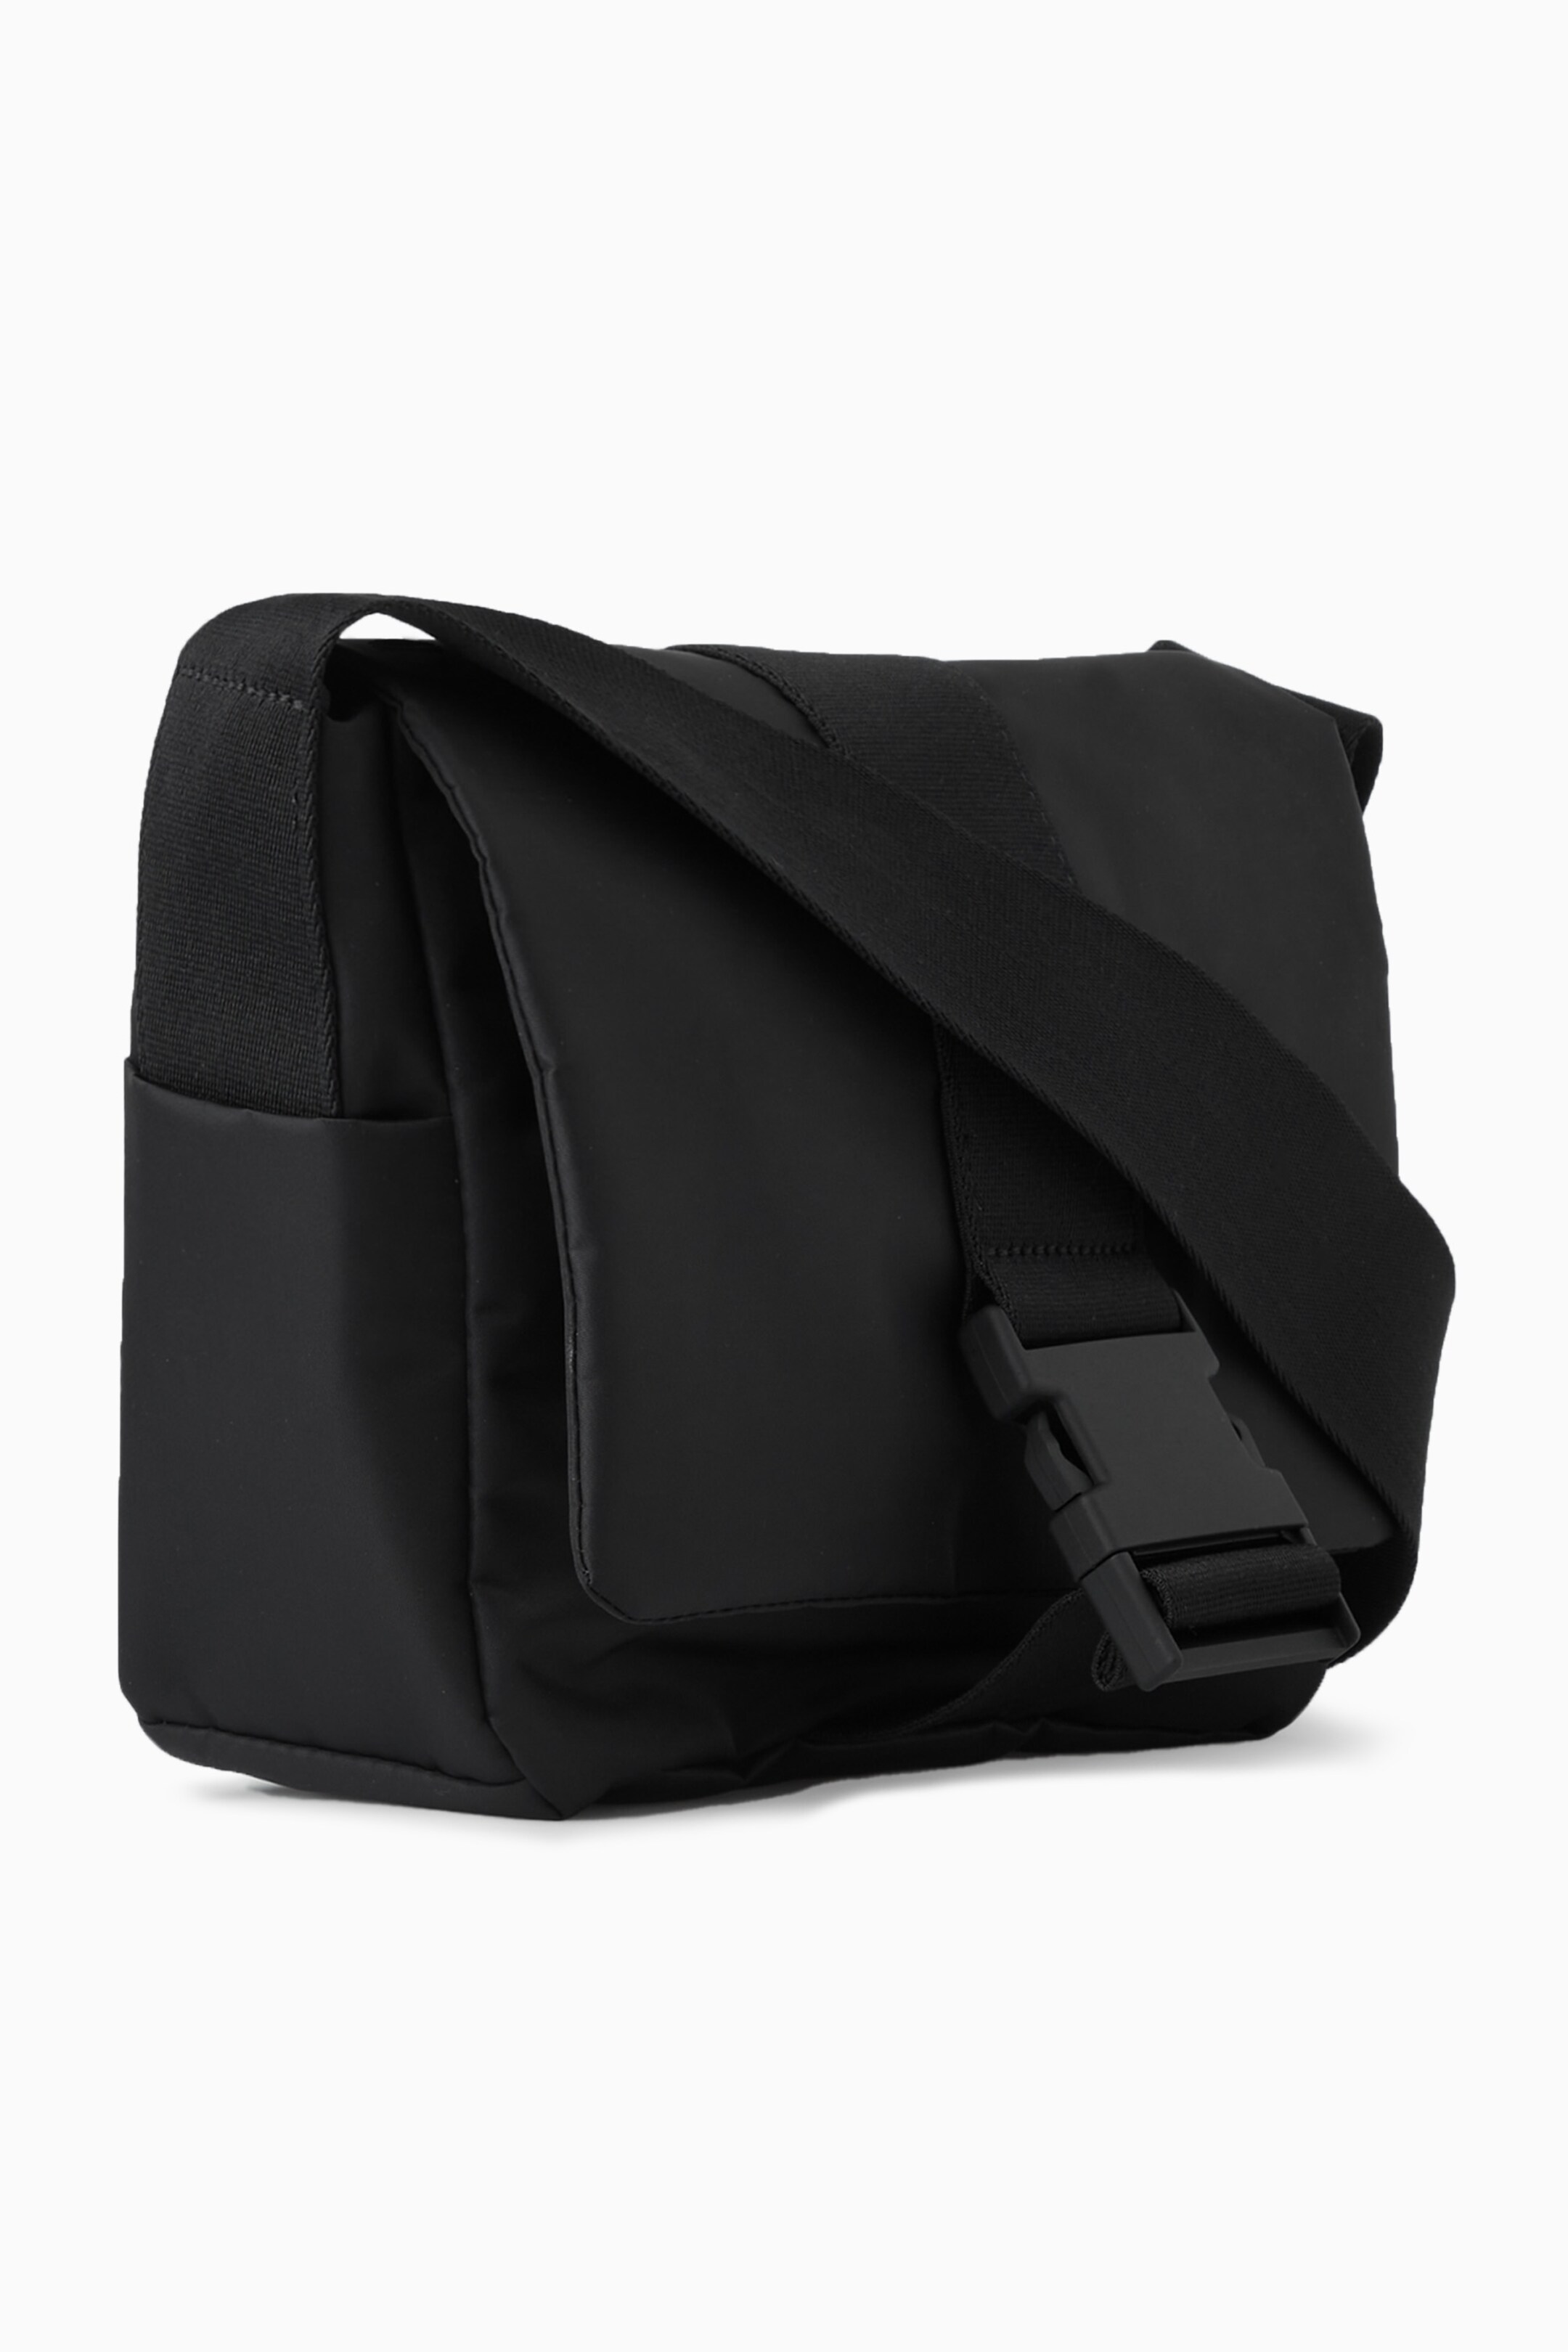 Mini Messenger Bag Black